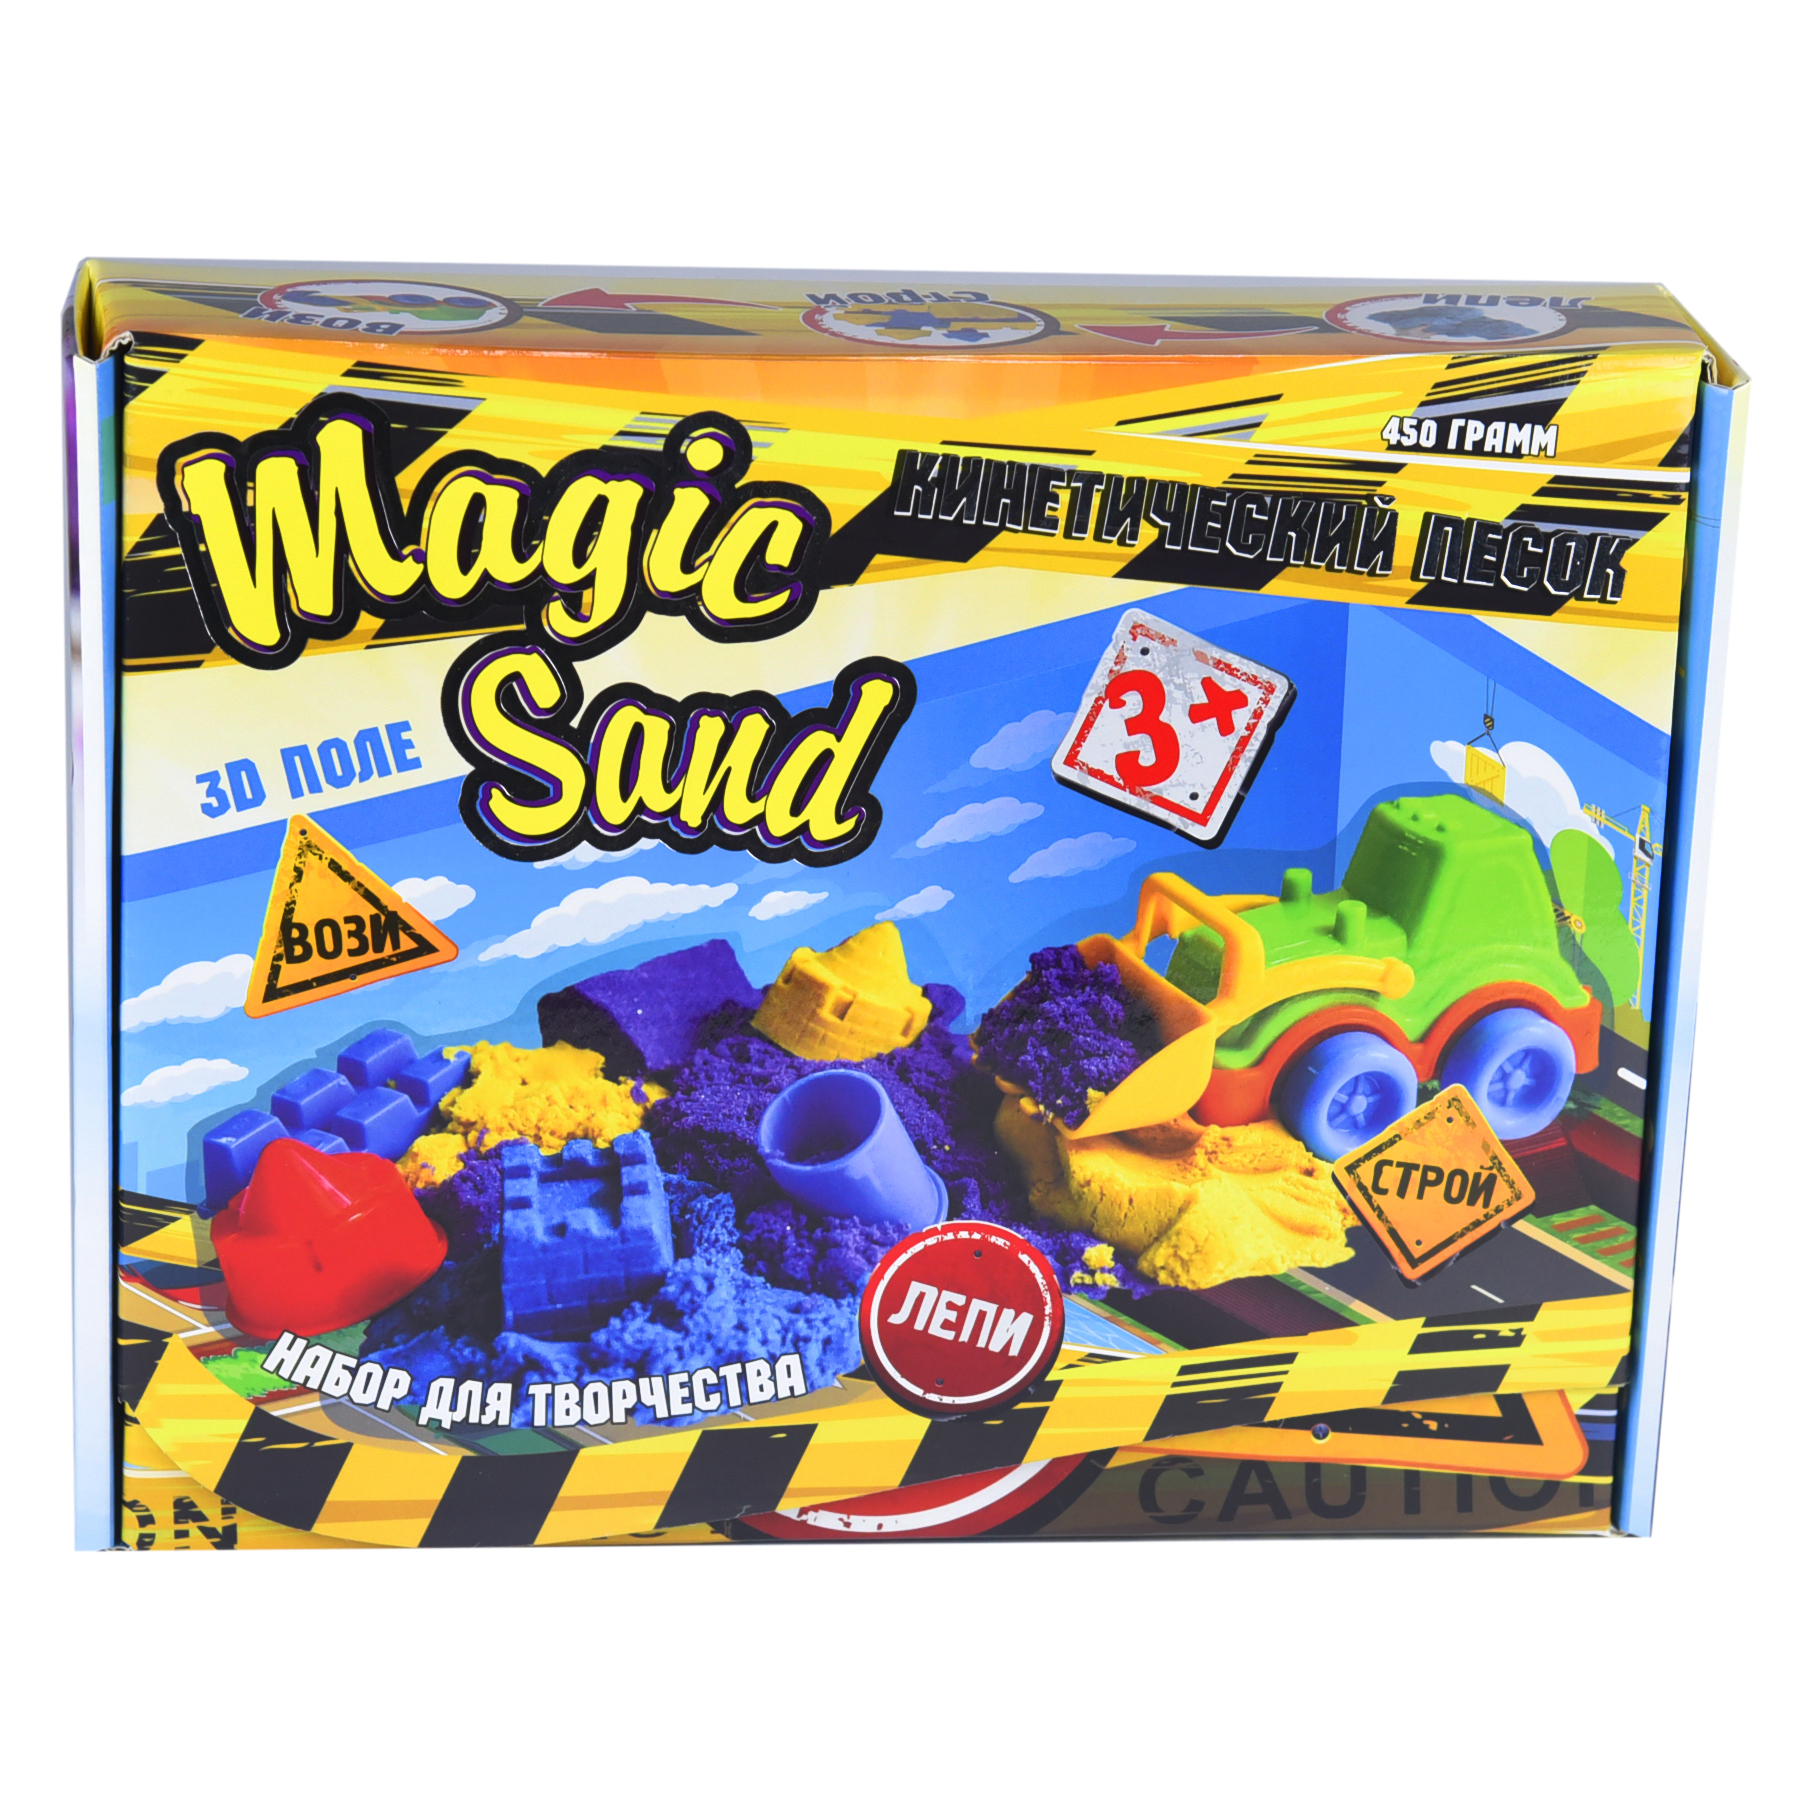 Кинетический песок Strateg Magic Sand 0,450 Трактор (51201)